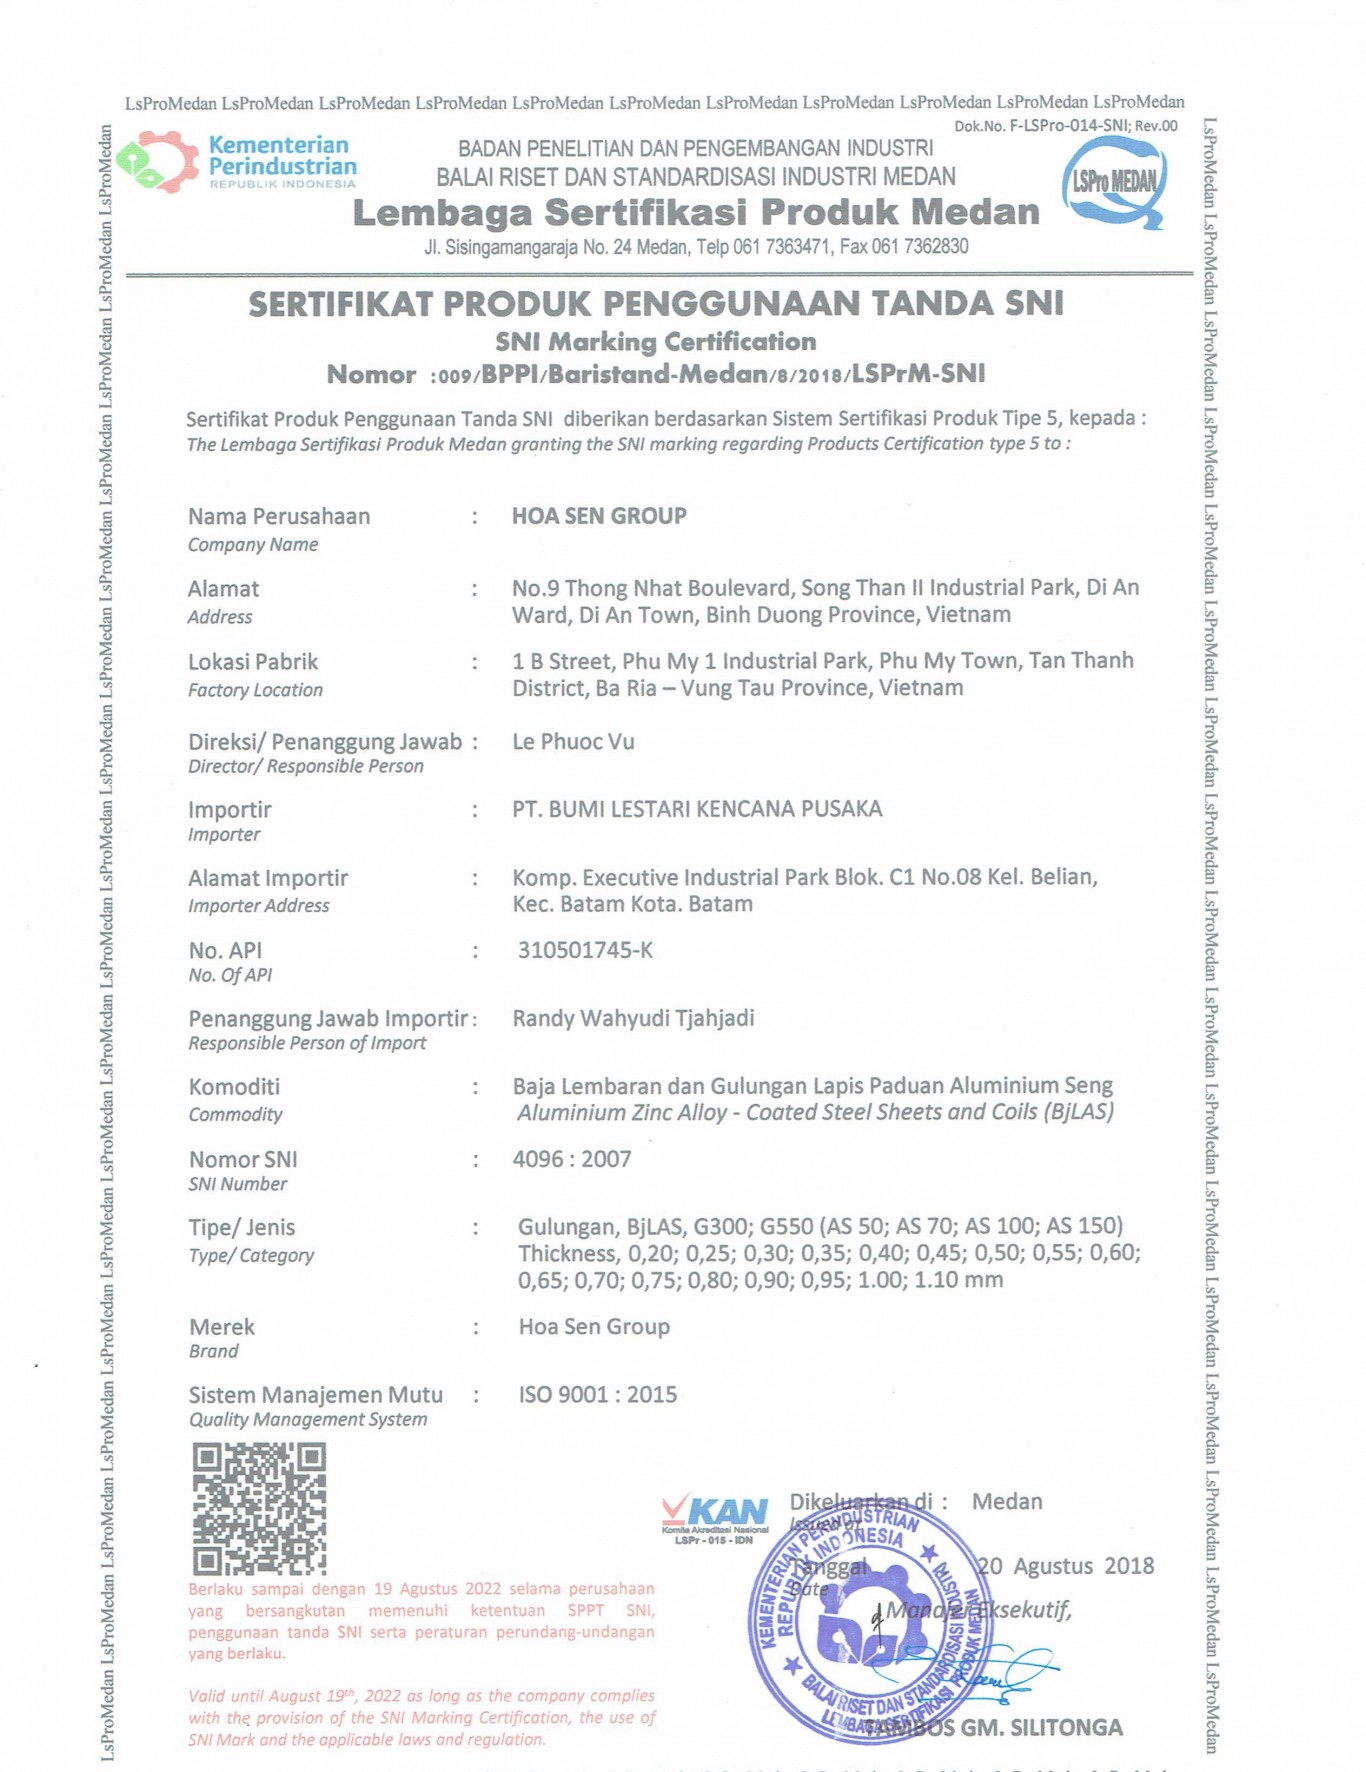 Sertifikasi SPPT SNI 4096 : 2007 Baja Lembaran dan Gulungan Lapis Paduan Alumunium Seng.